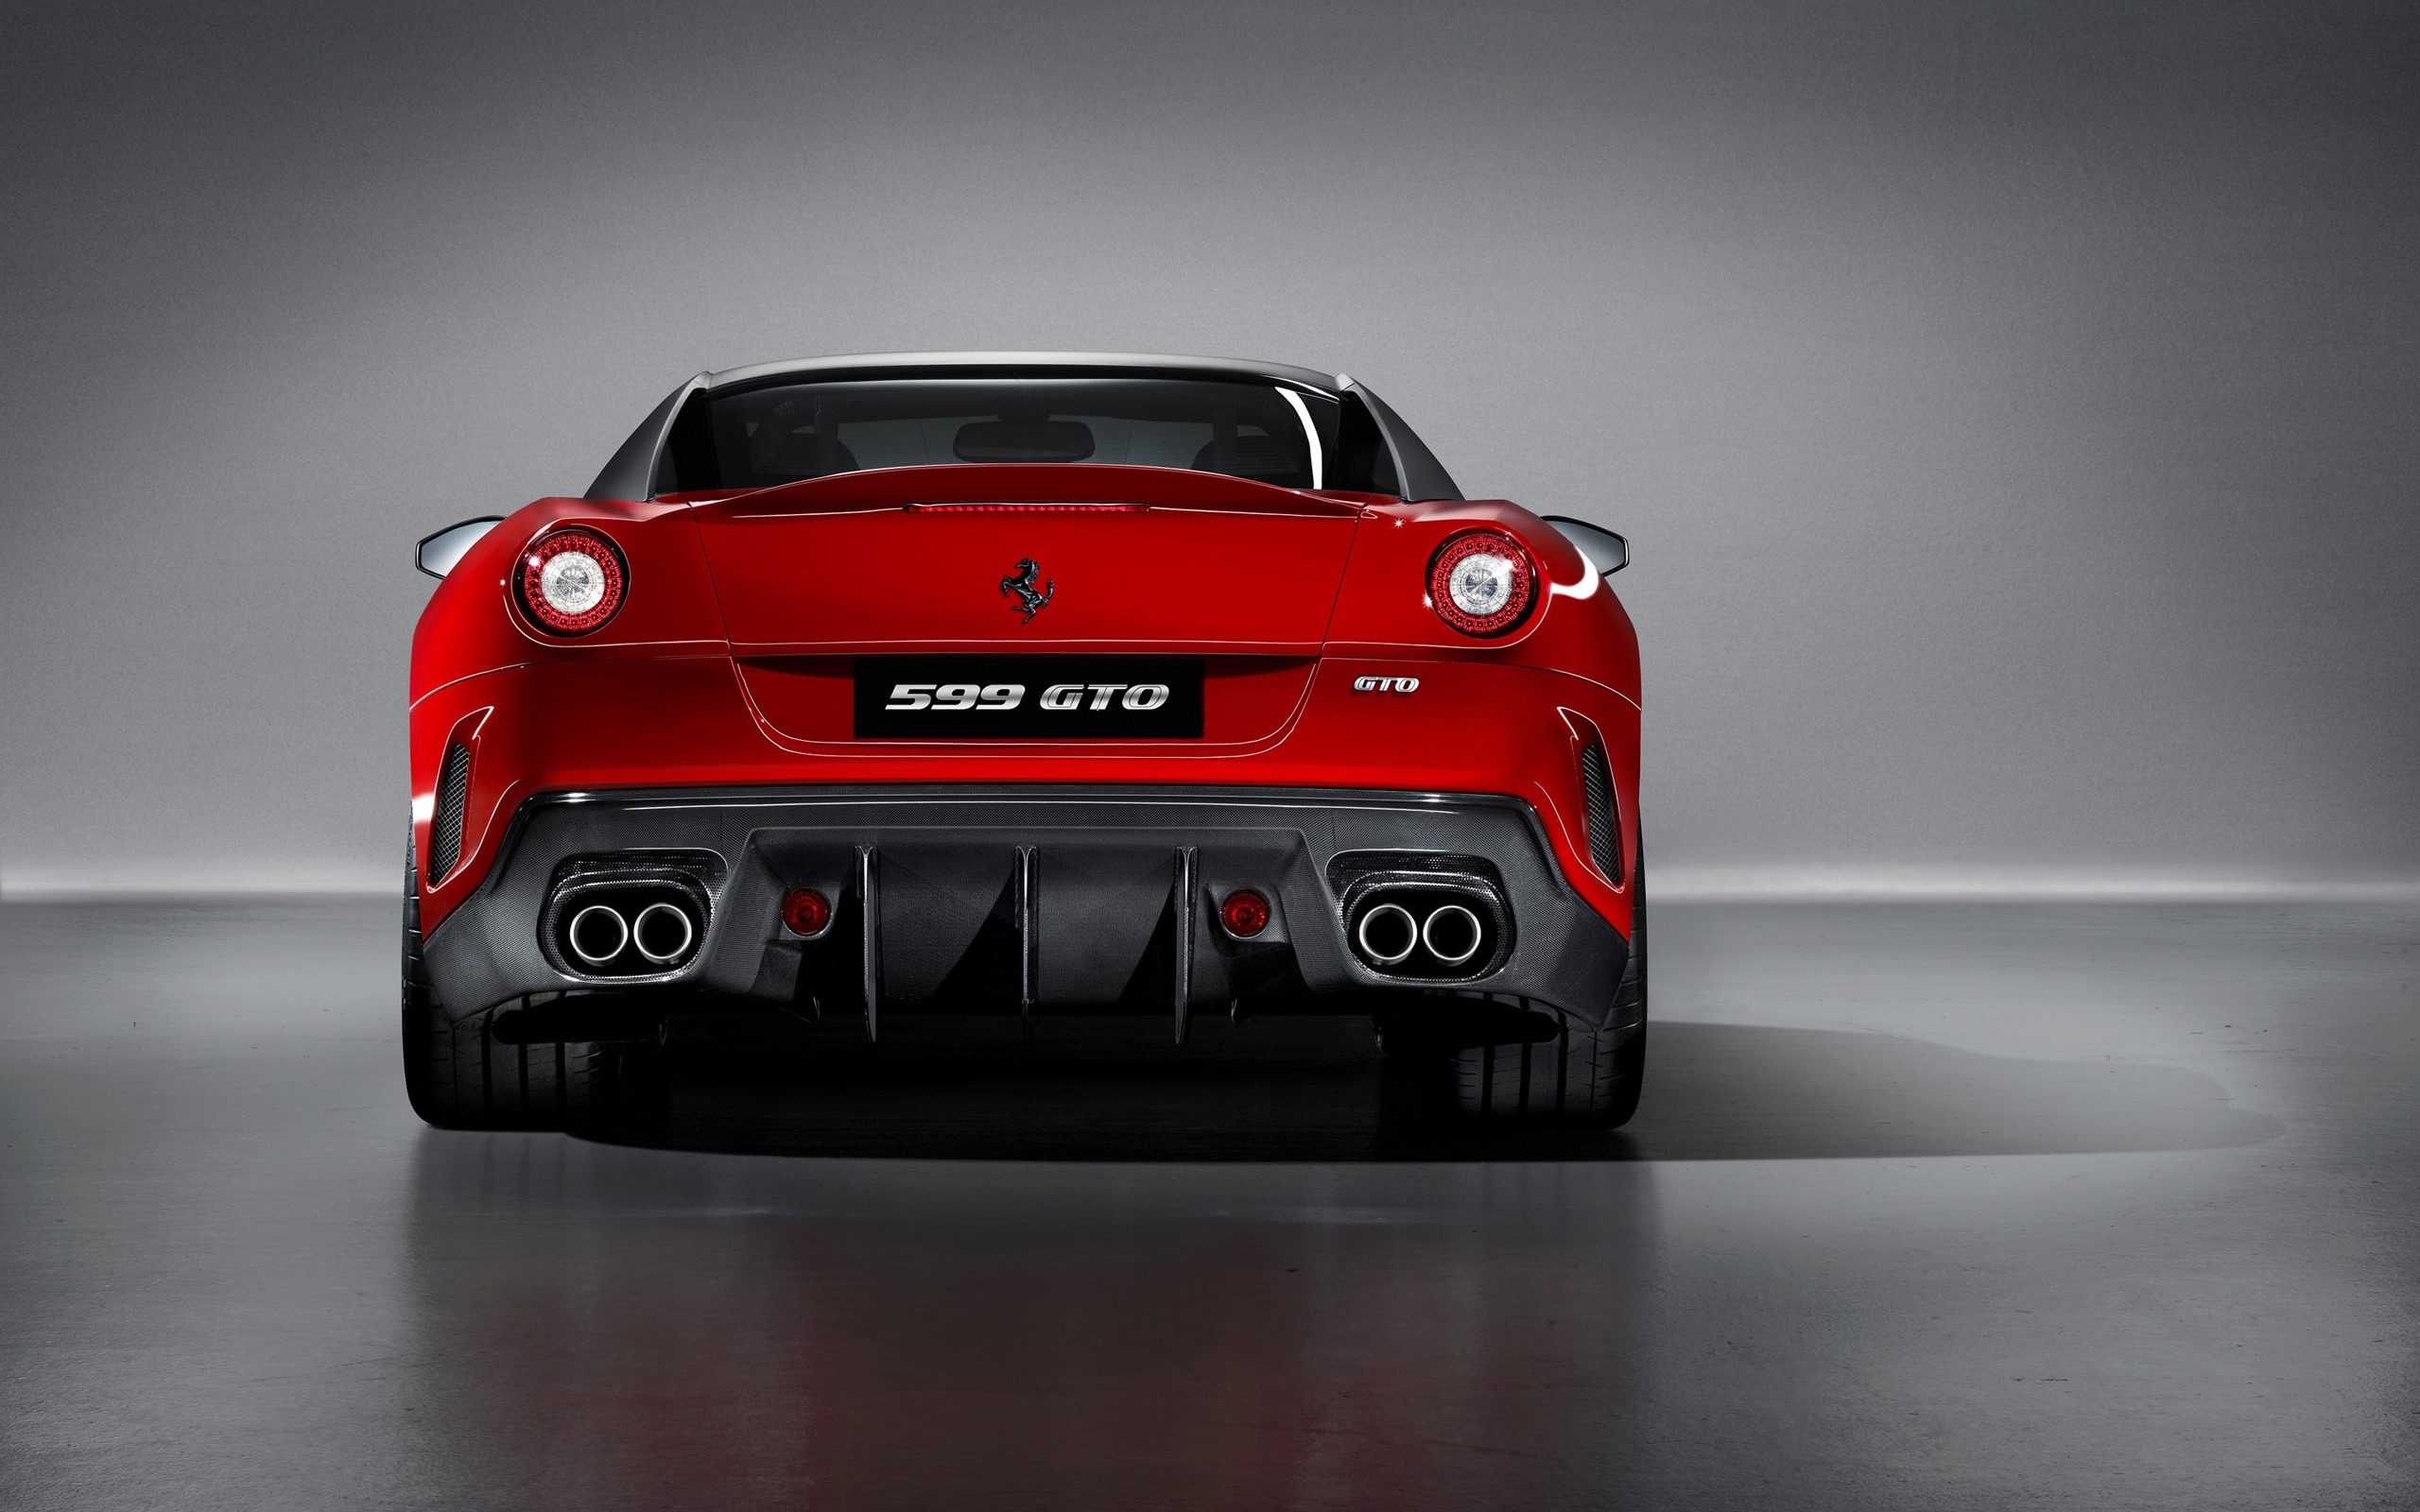 Ferrari 599 GTO Rear for 2560 x 1600 widescreen resolution